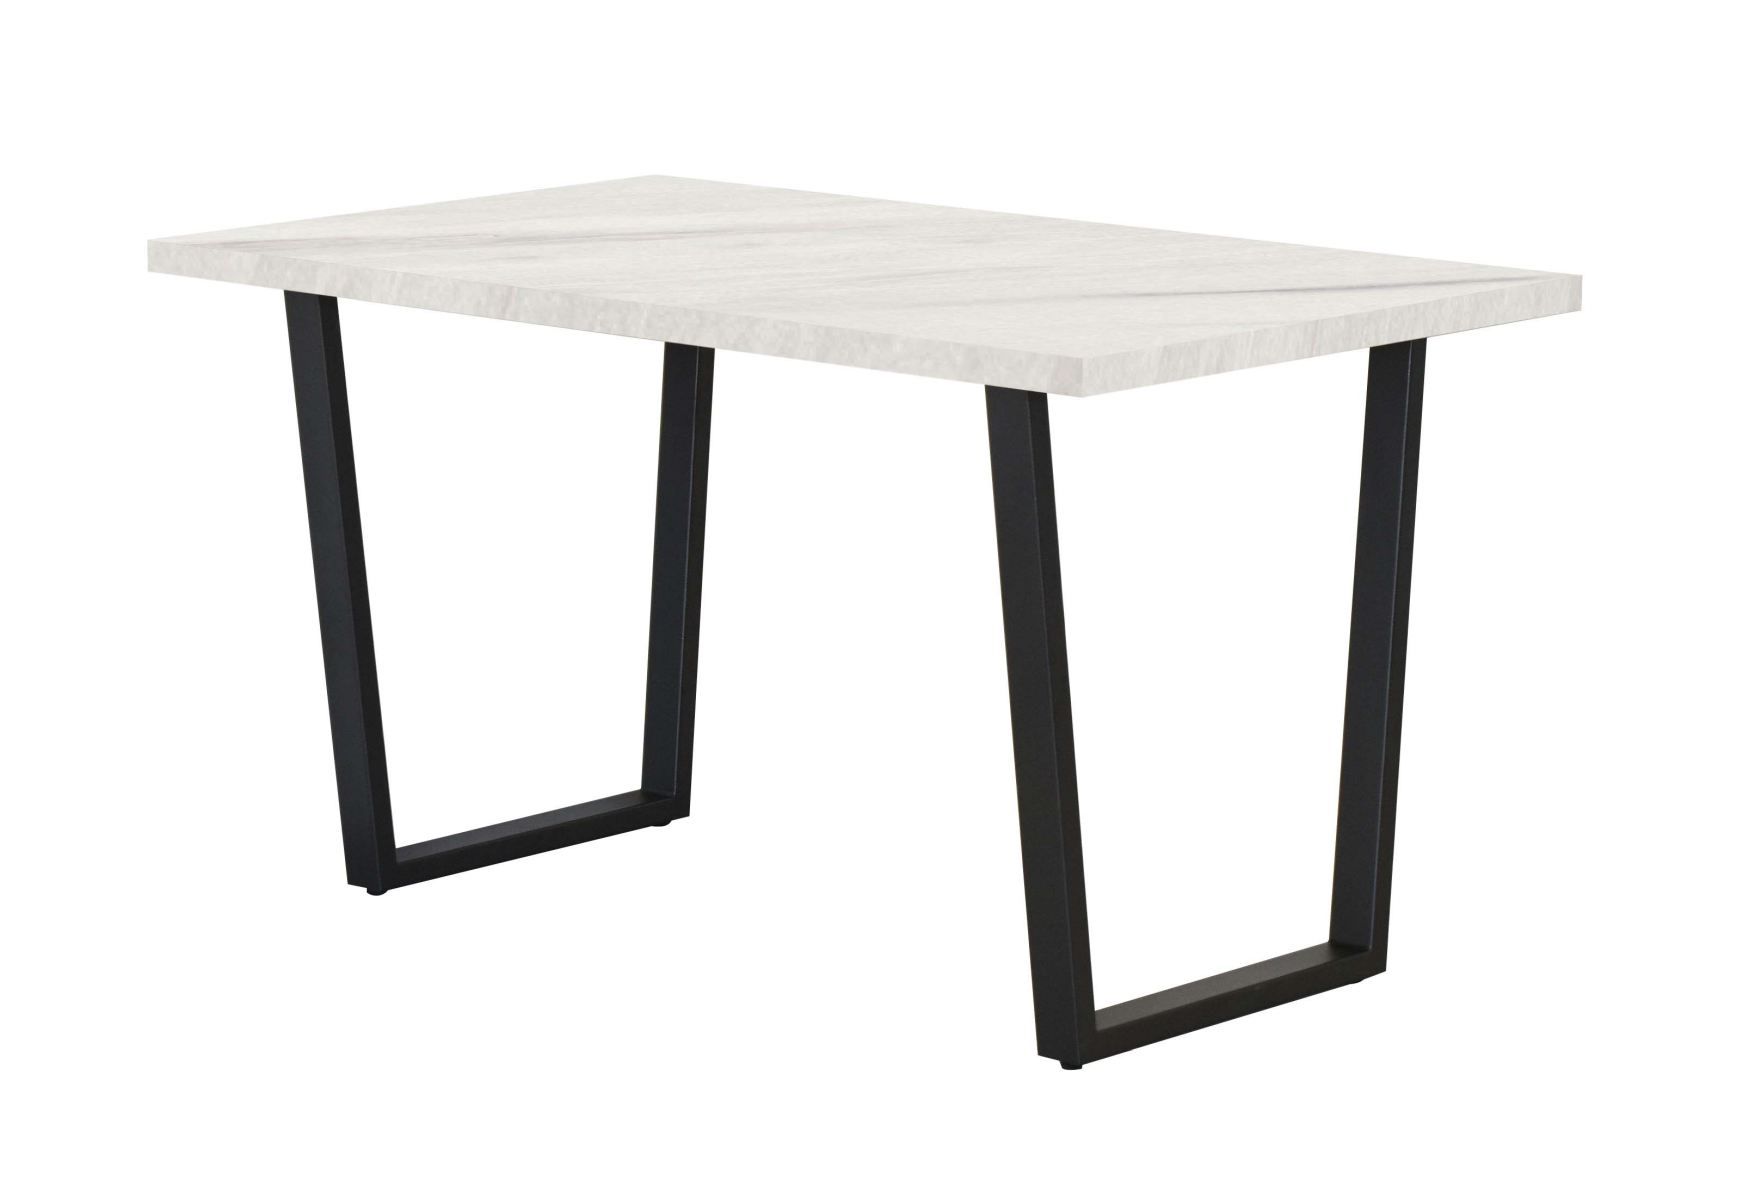 Table de salle à manger Ourense 03, Couleur : Marbre blanc / Noir - dimensions : 140 x 80 cm (l x p)